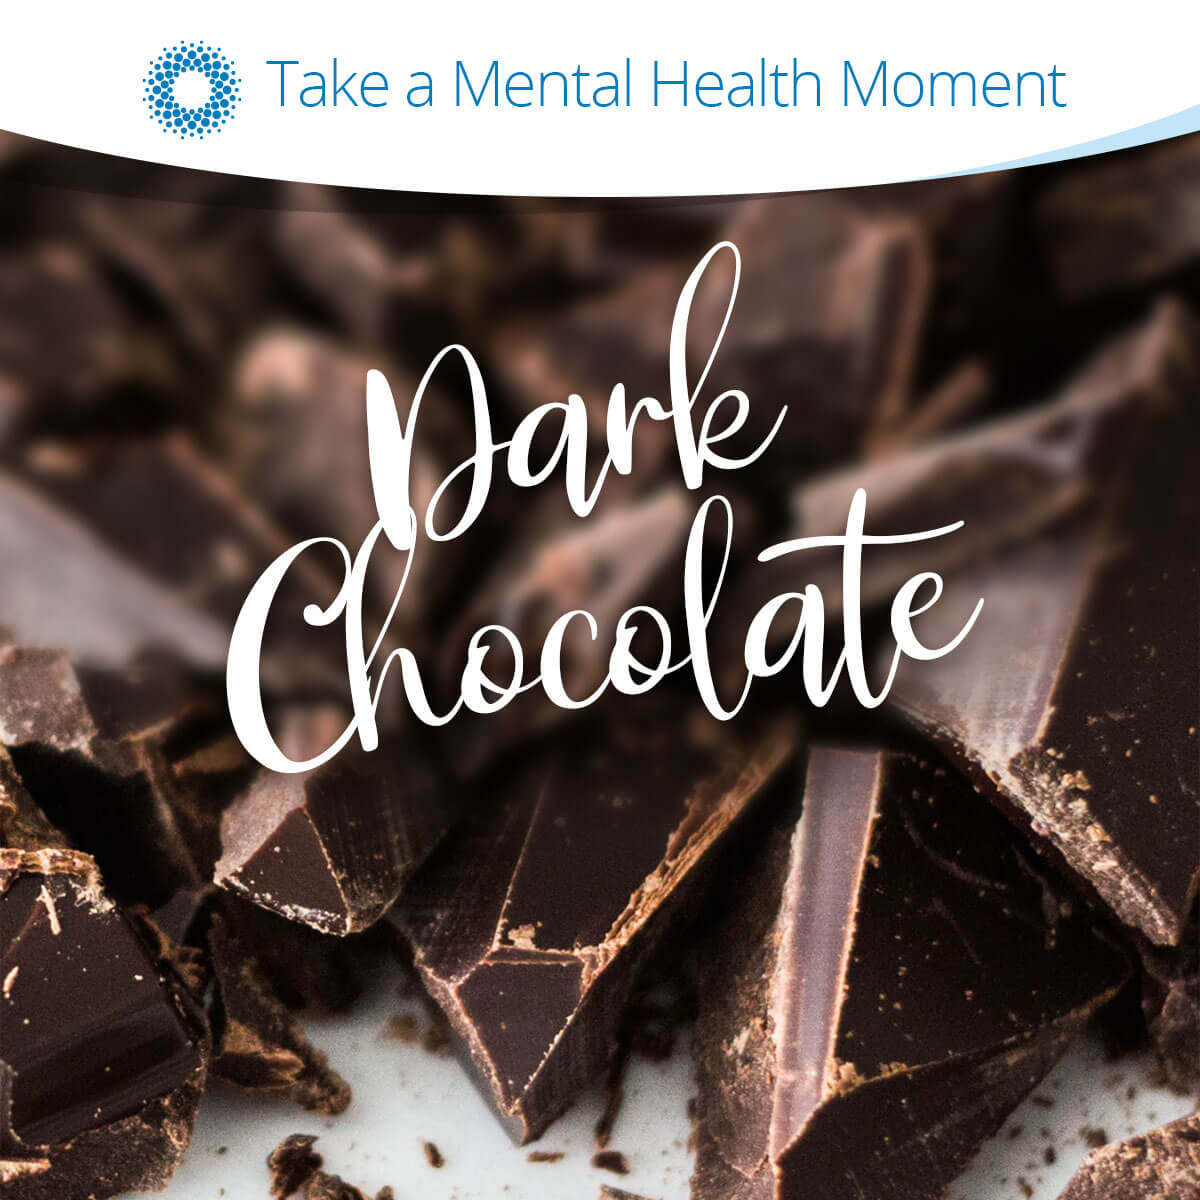 Image of dark chocolate